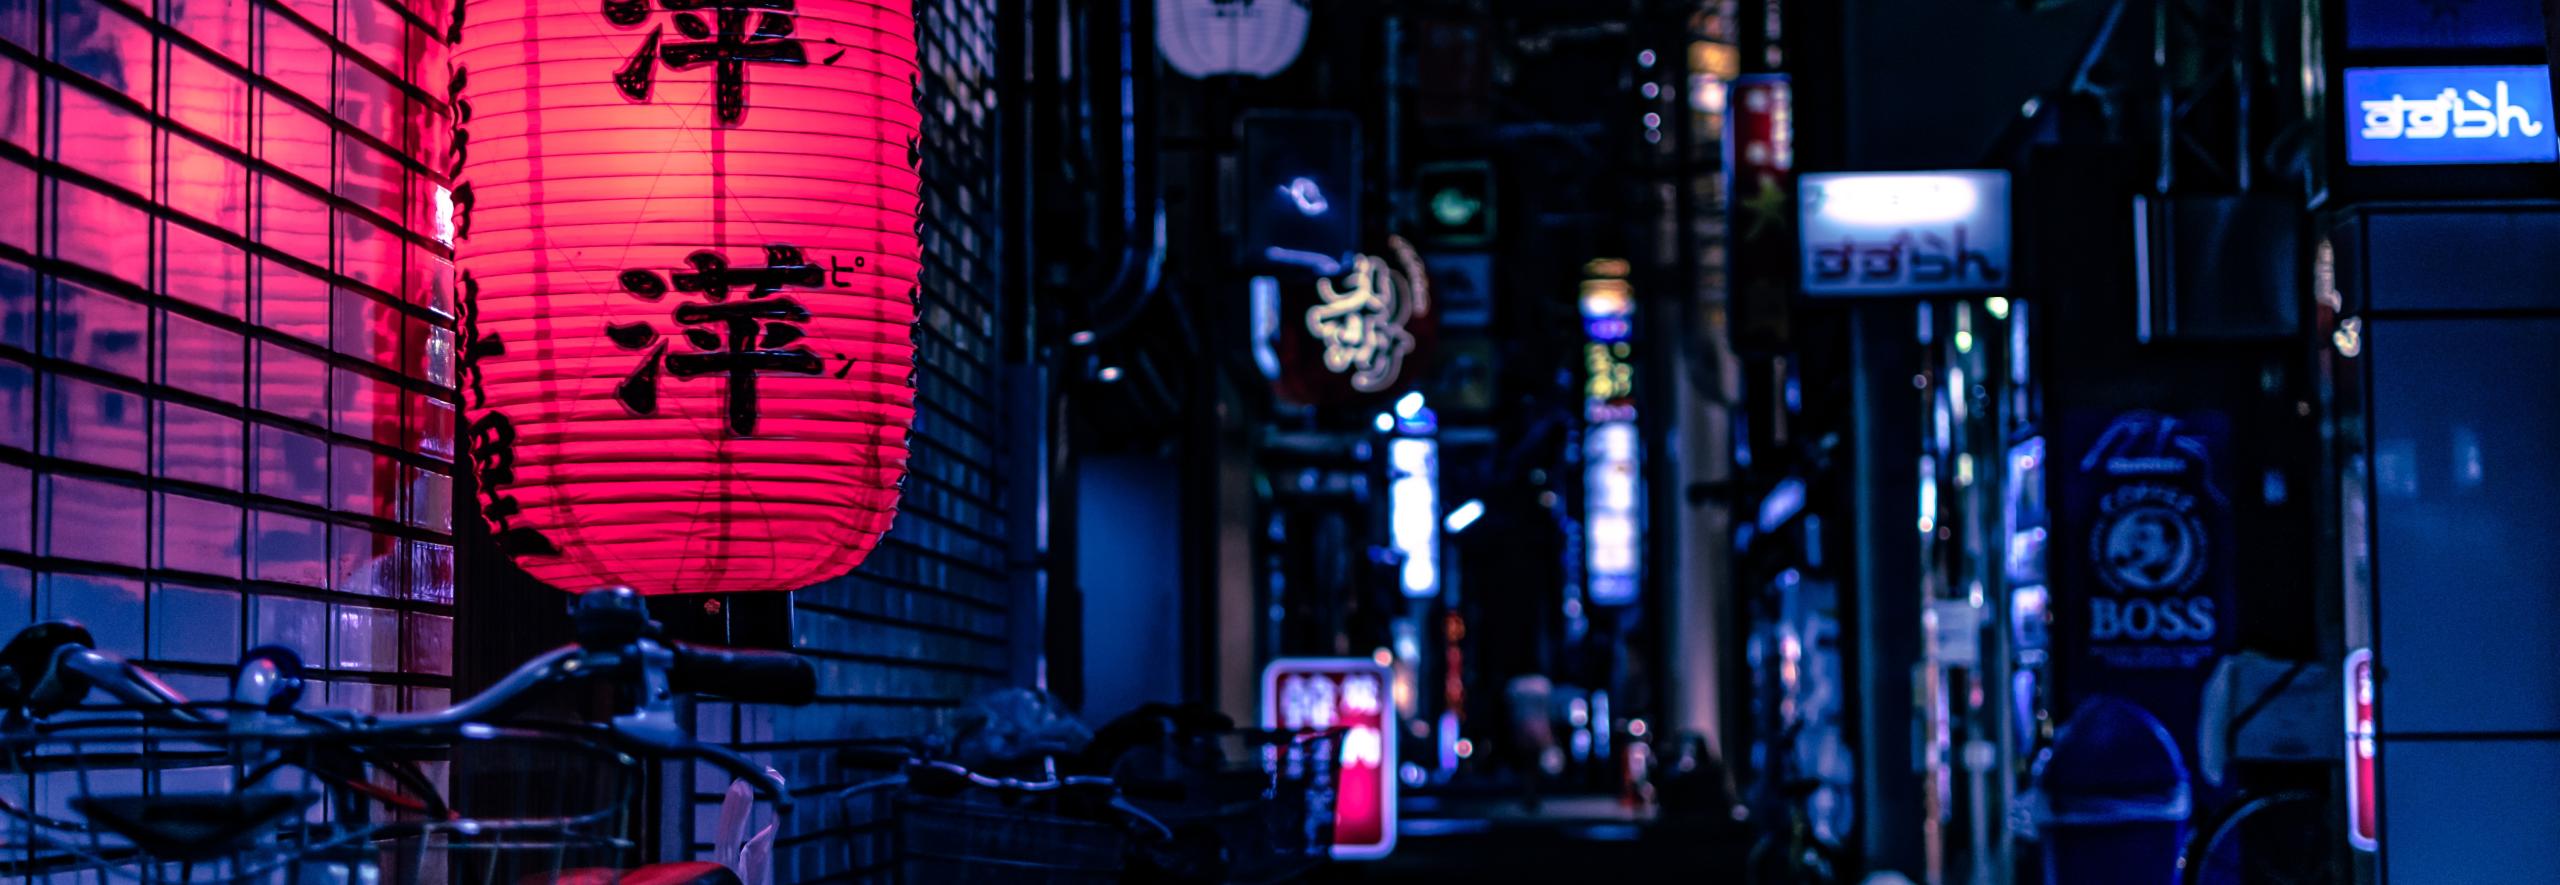 Lantern Japan